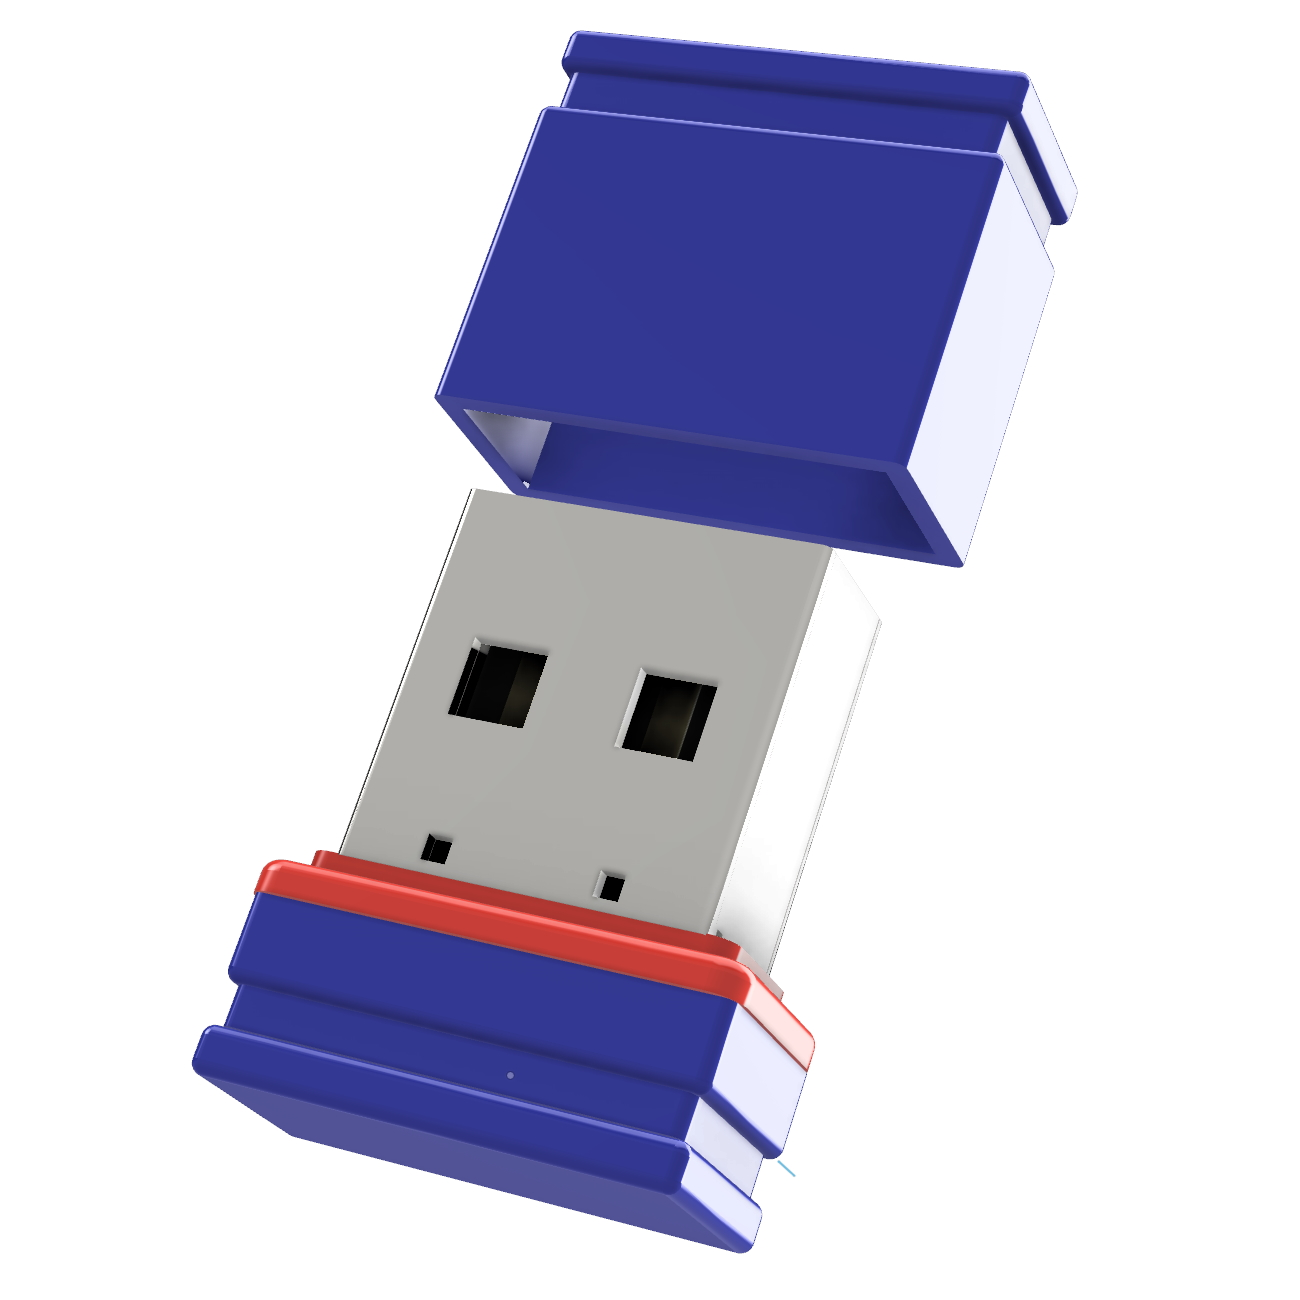 (Blau/Rot, Mini ®ULTRA USB-Stick GERMANY P1 GB) USB 1